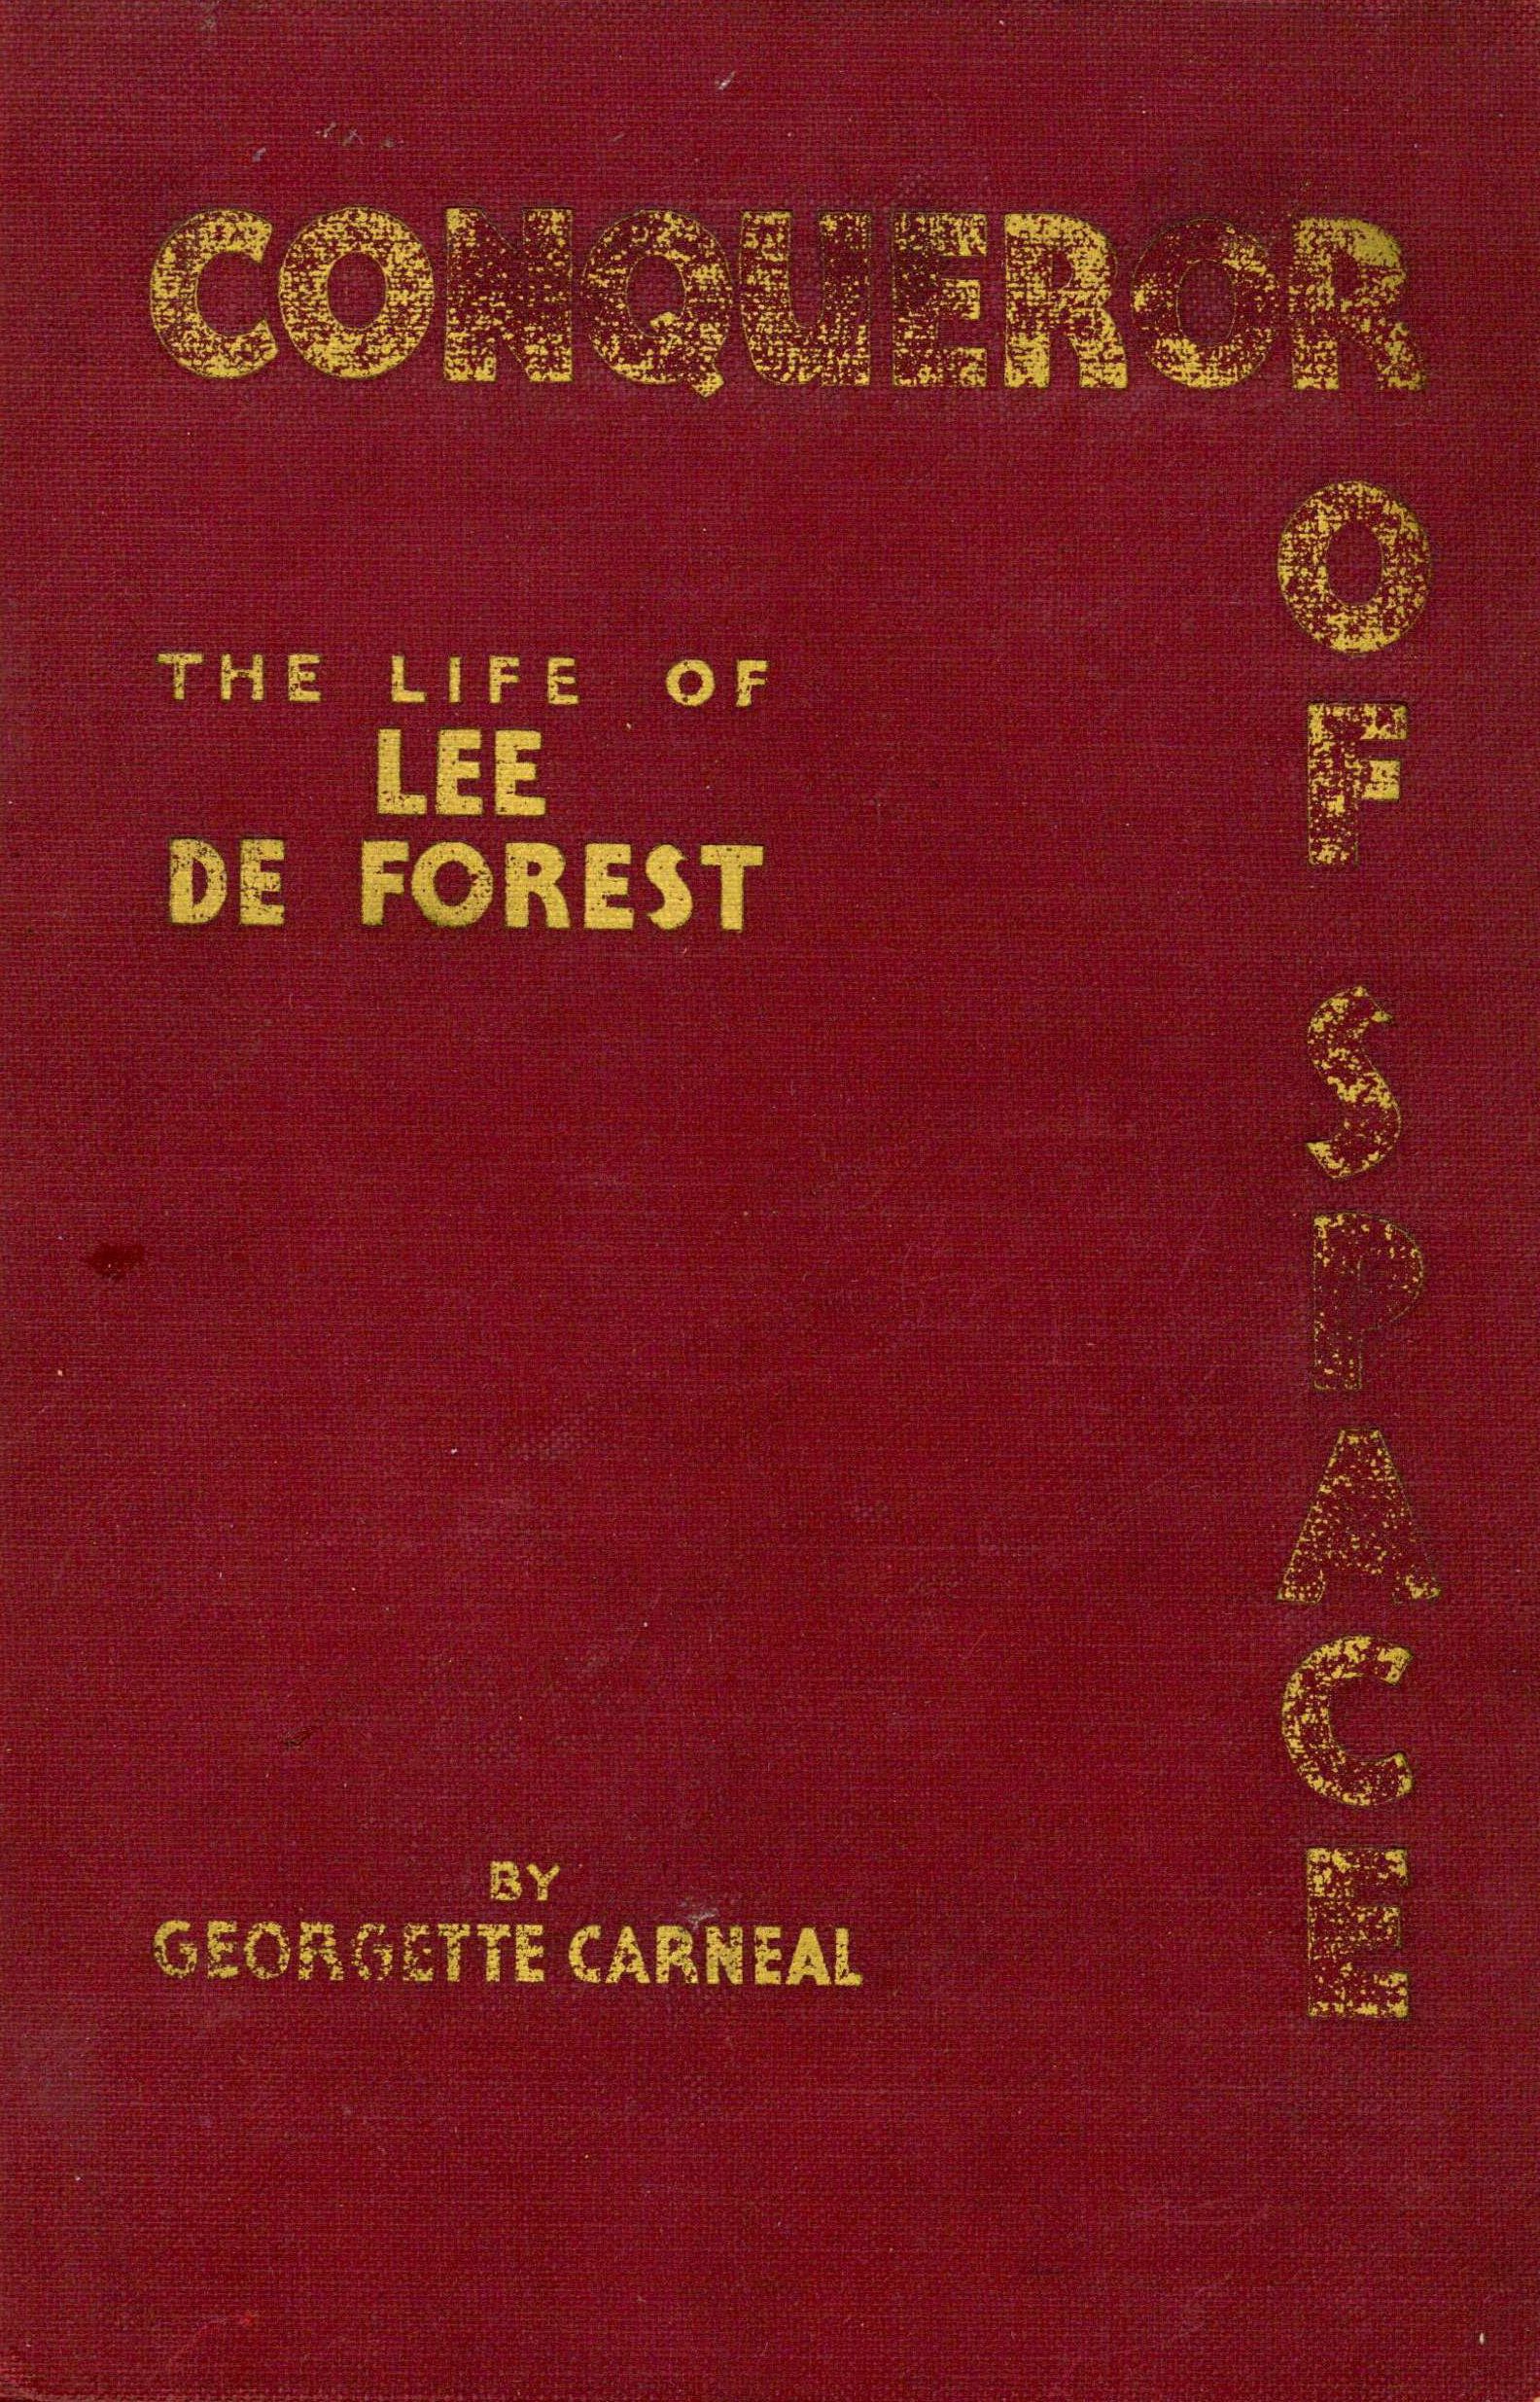 Lee de Forest 1930